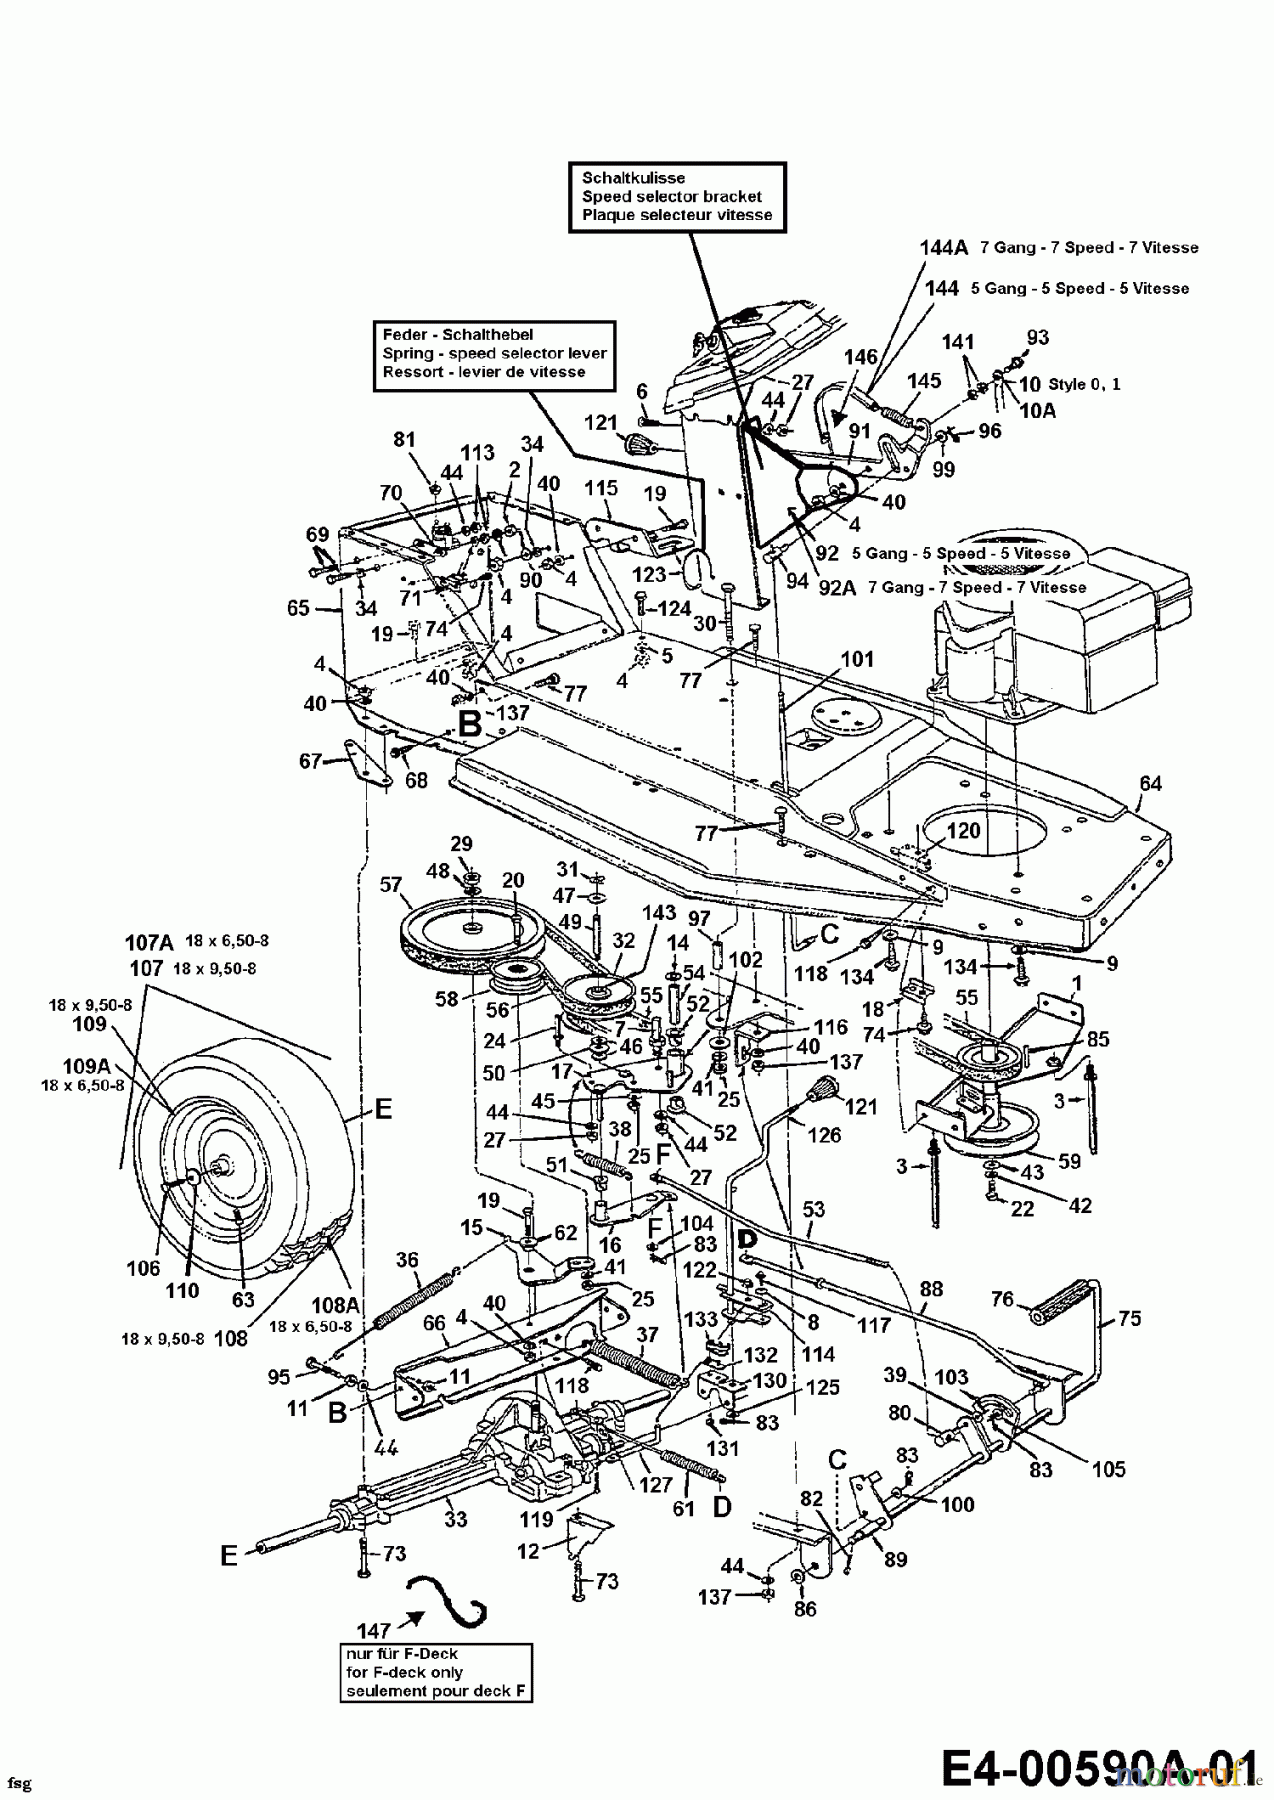  Edt Rasentraktoren EDT 115-76 13AC452C610  (1997) Fahrantrieb, Motorkeilriemenscheibe, Pedal, Räder hinten